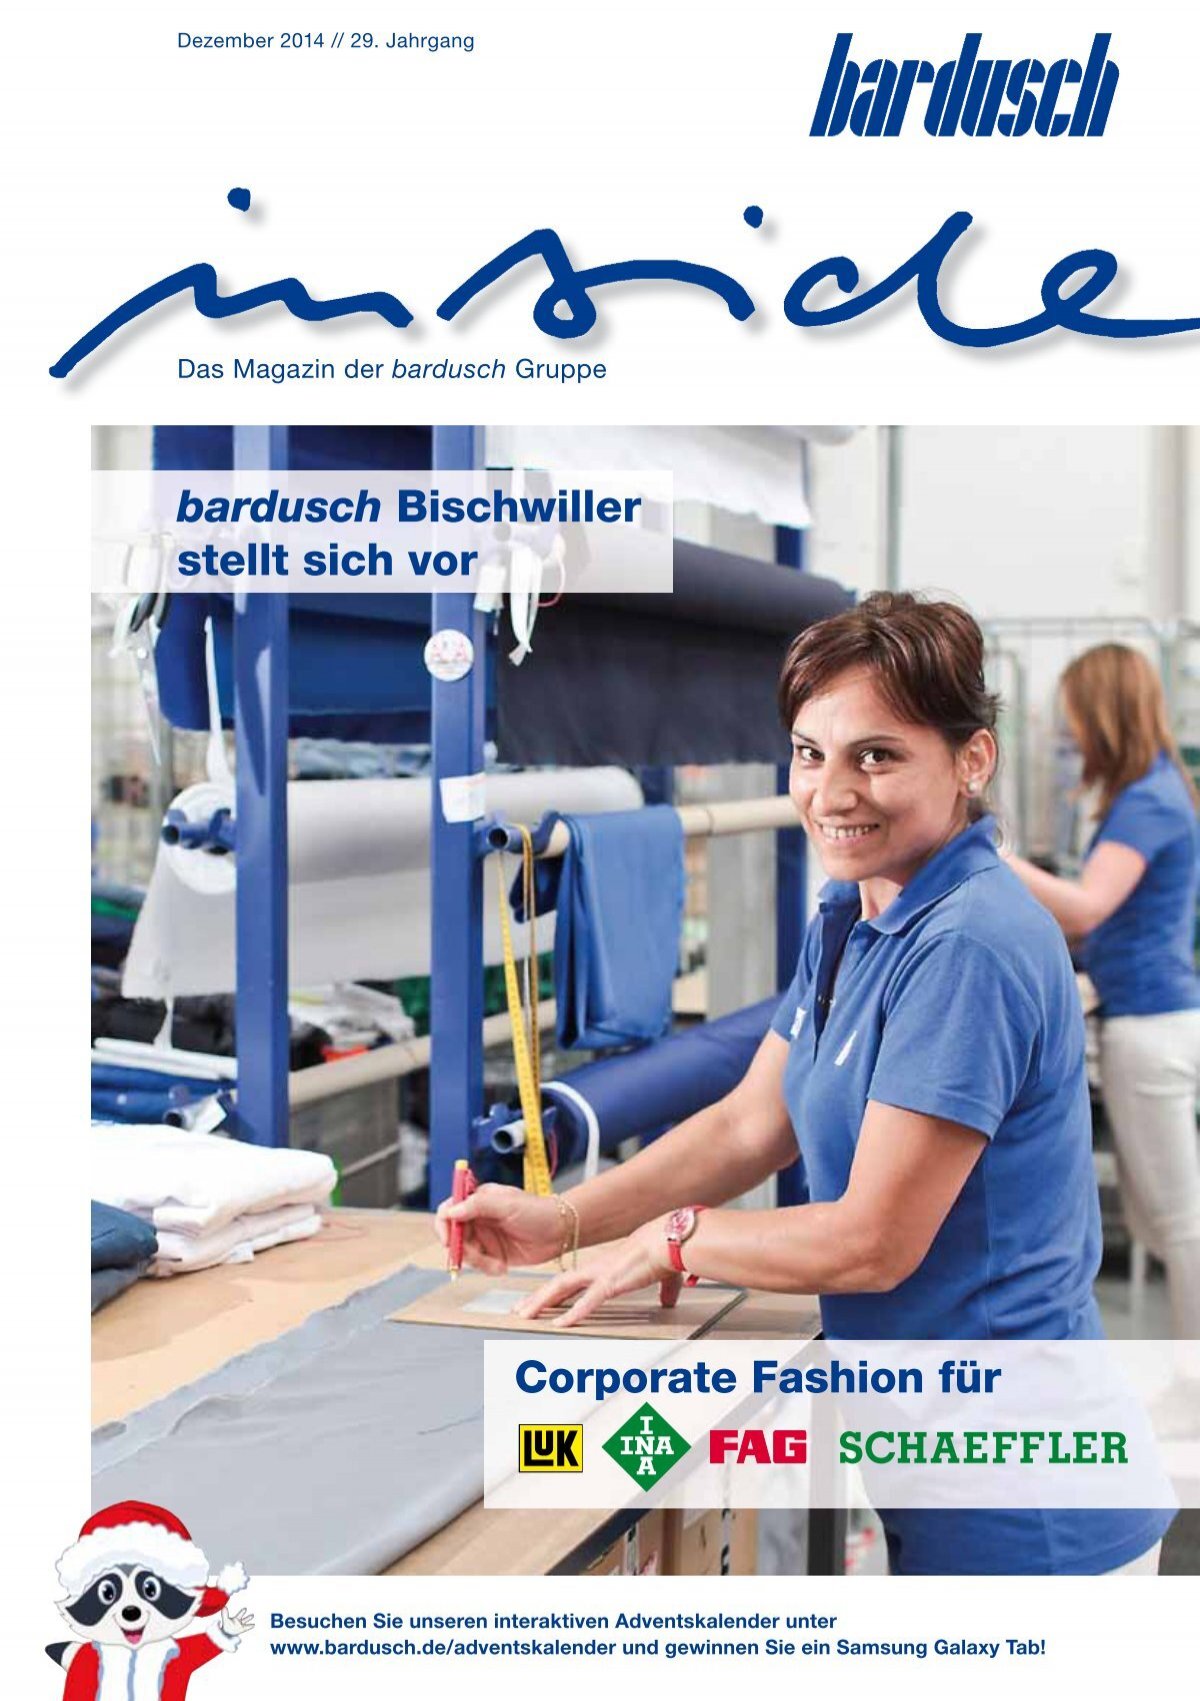 Bardusch Inside 03 14 Corporate Fashion Fur Schaeffler